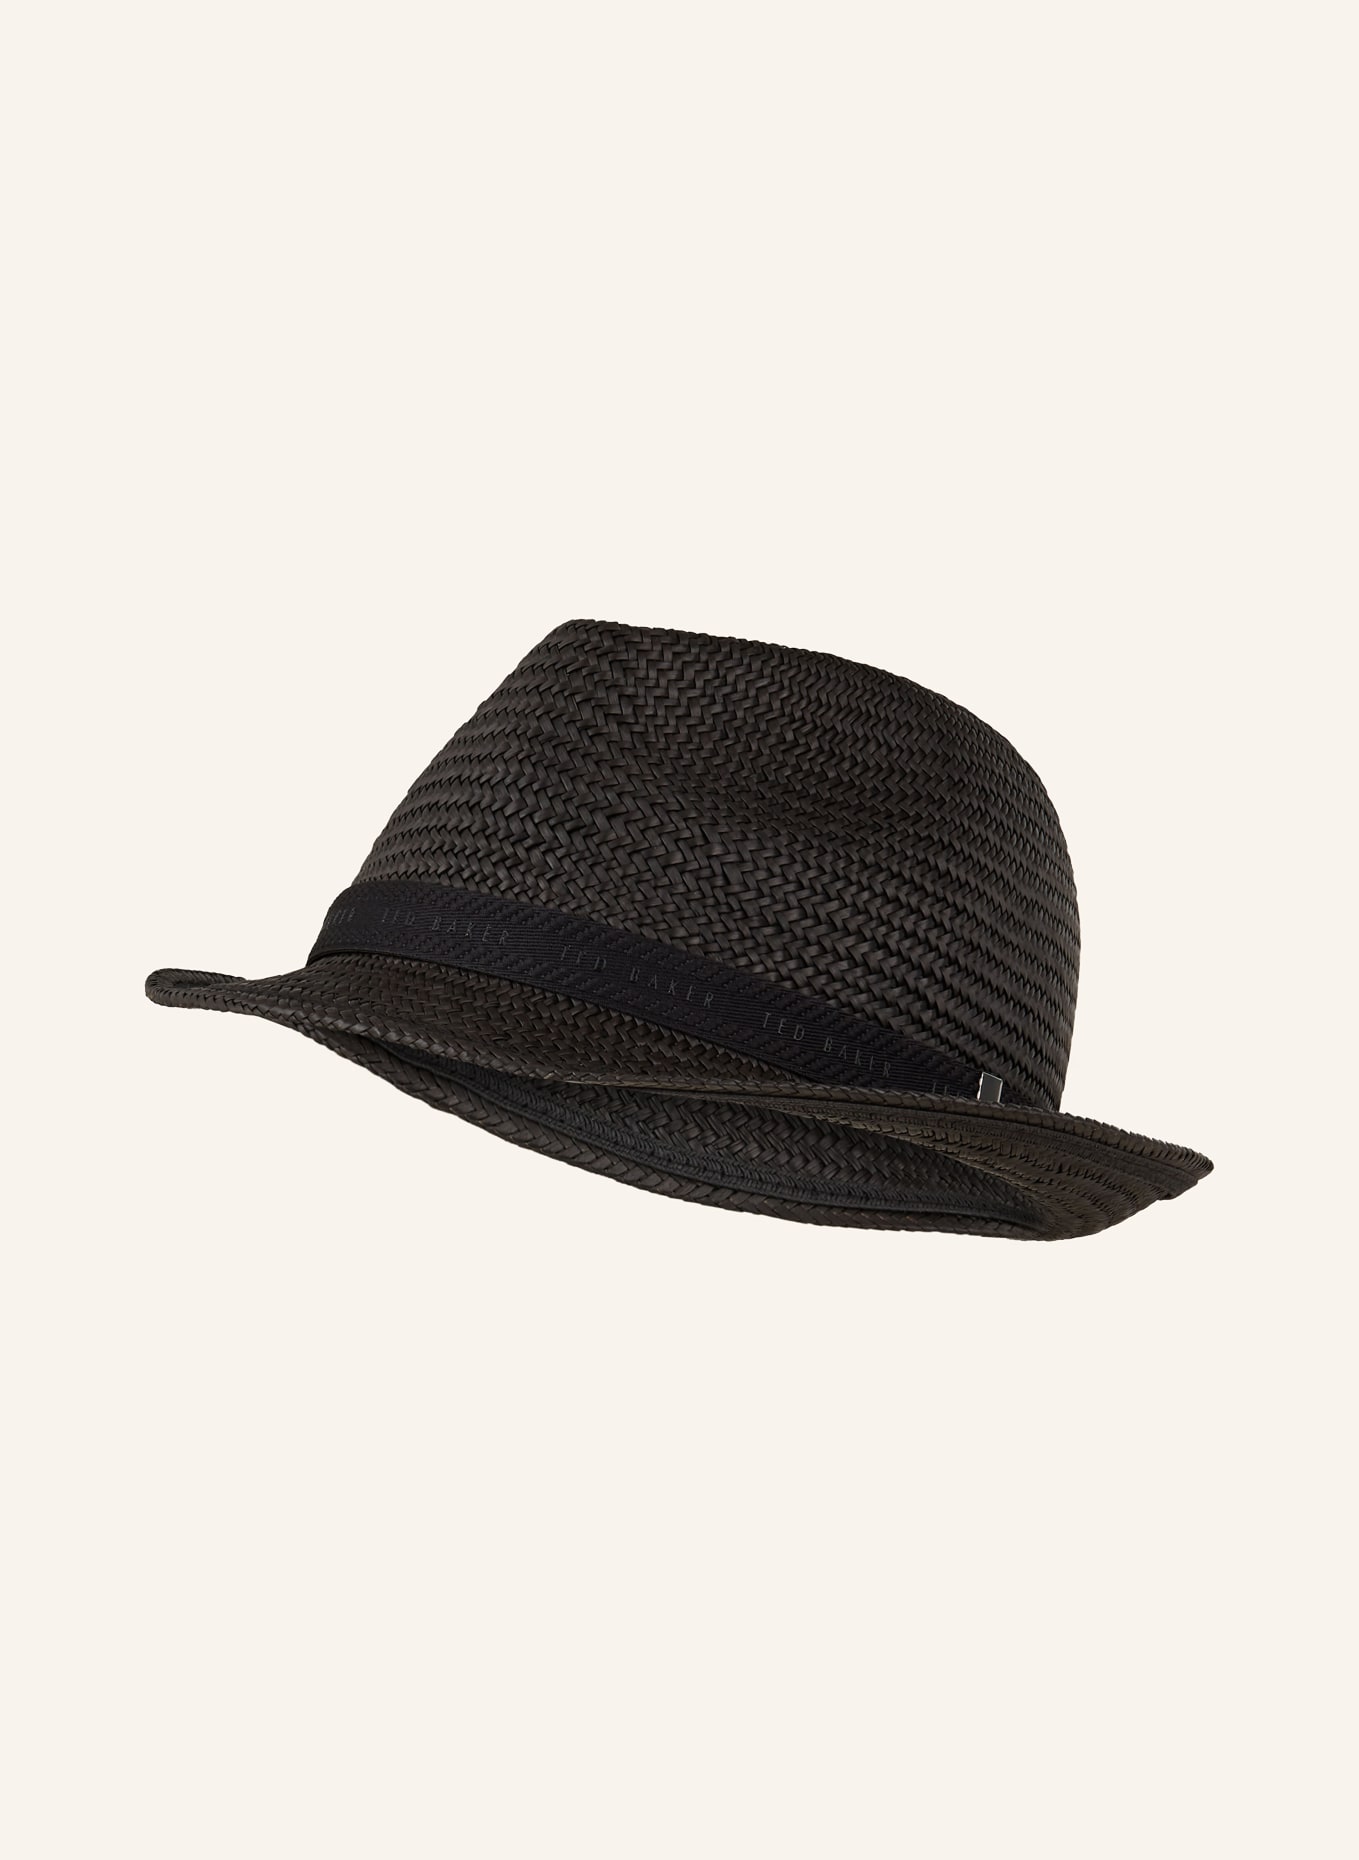 TED BAKER Straw hat PANNS, Color: BLACK (Image 1)